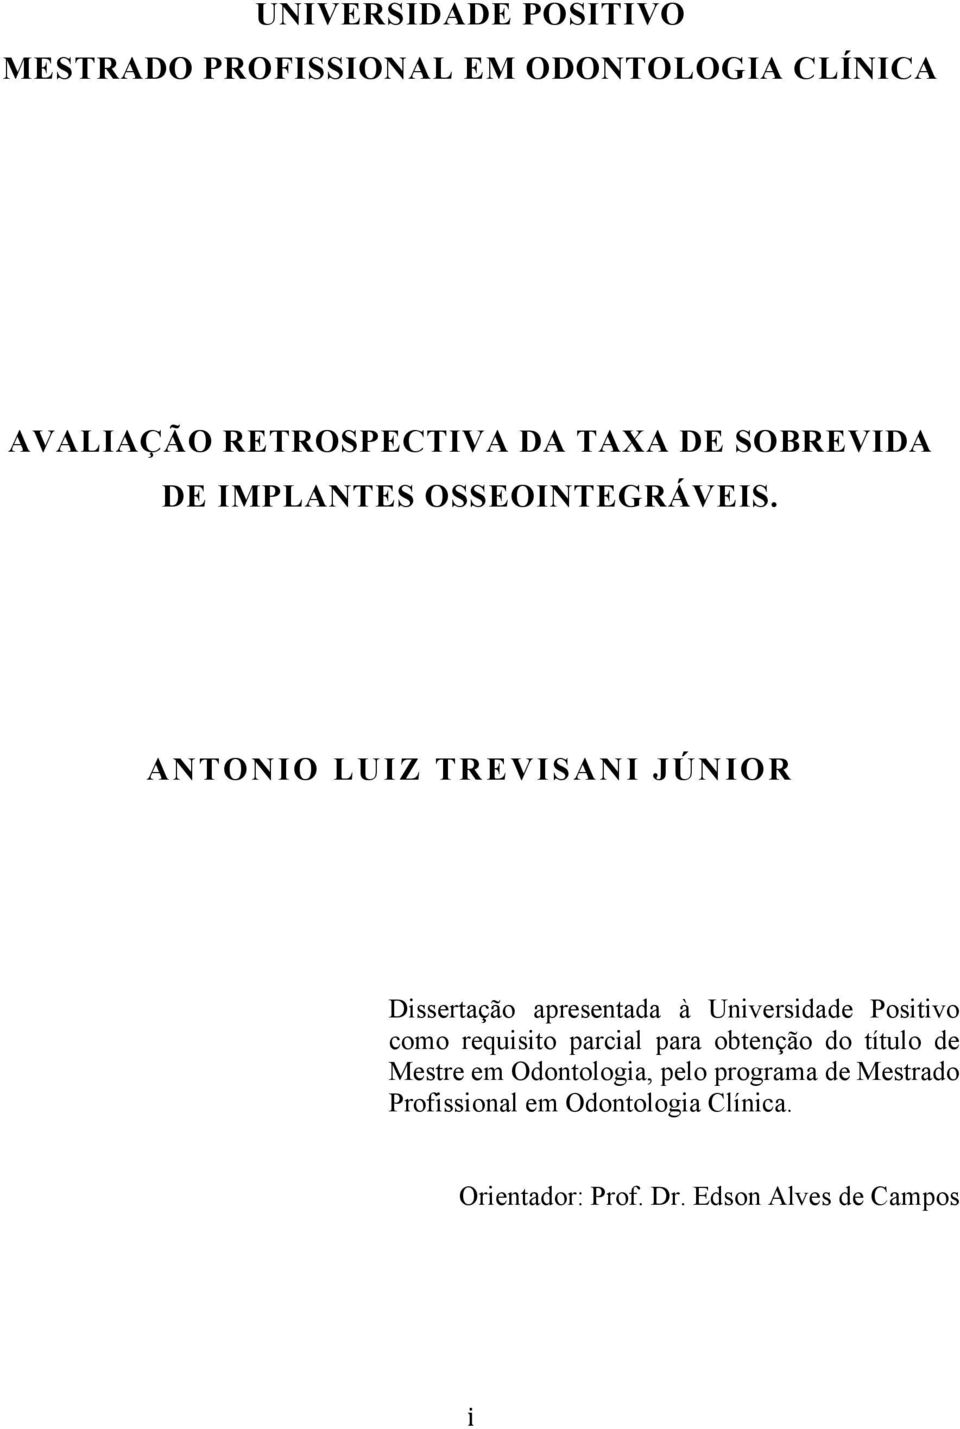 ANTONIO LUIZ TREVISANI JÚNIOR Dissertação apresentada à Universidade Positivo como requisito parcial